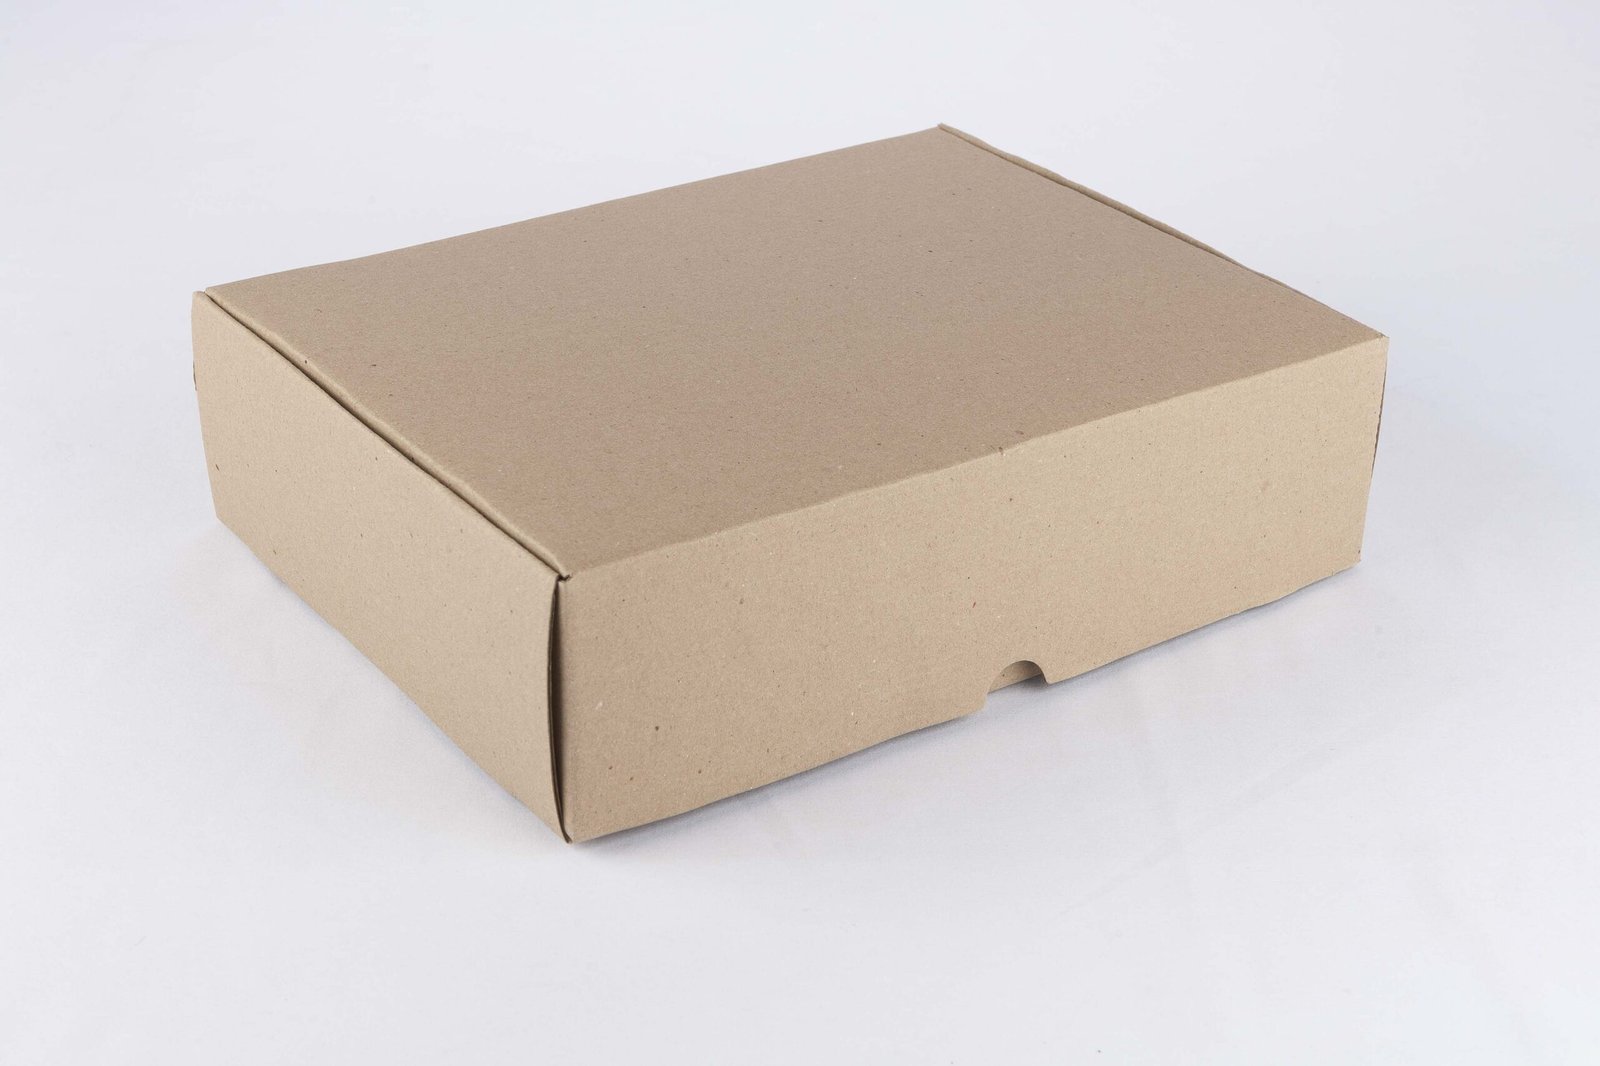 Caja rigida en carton corrugado